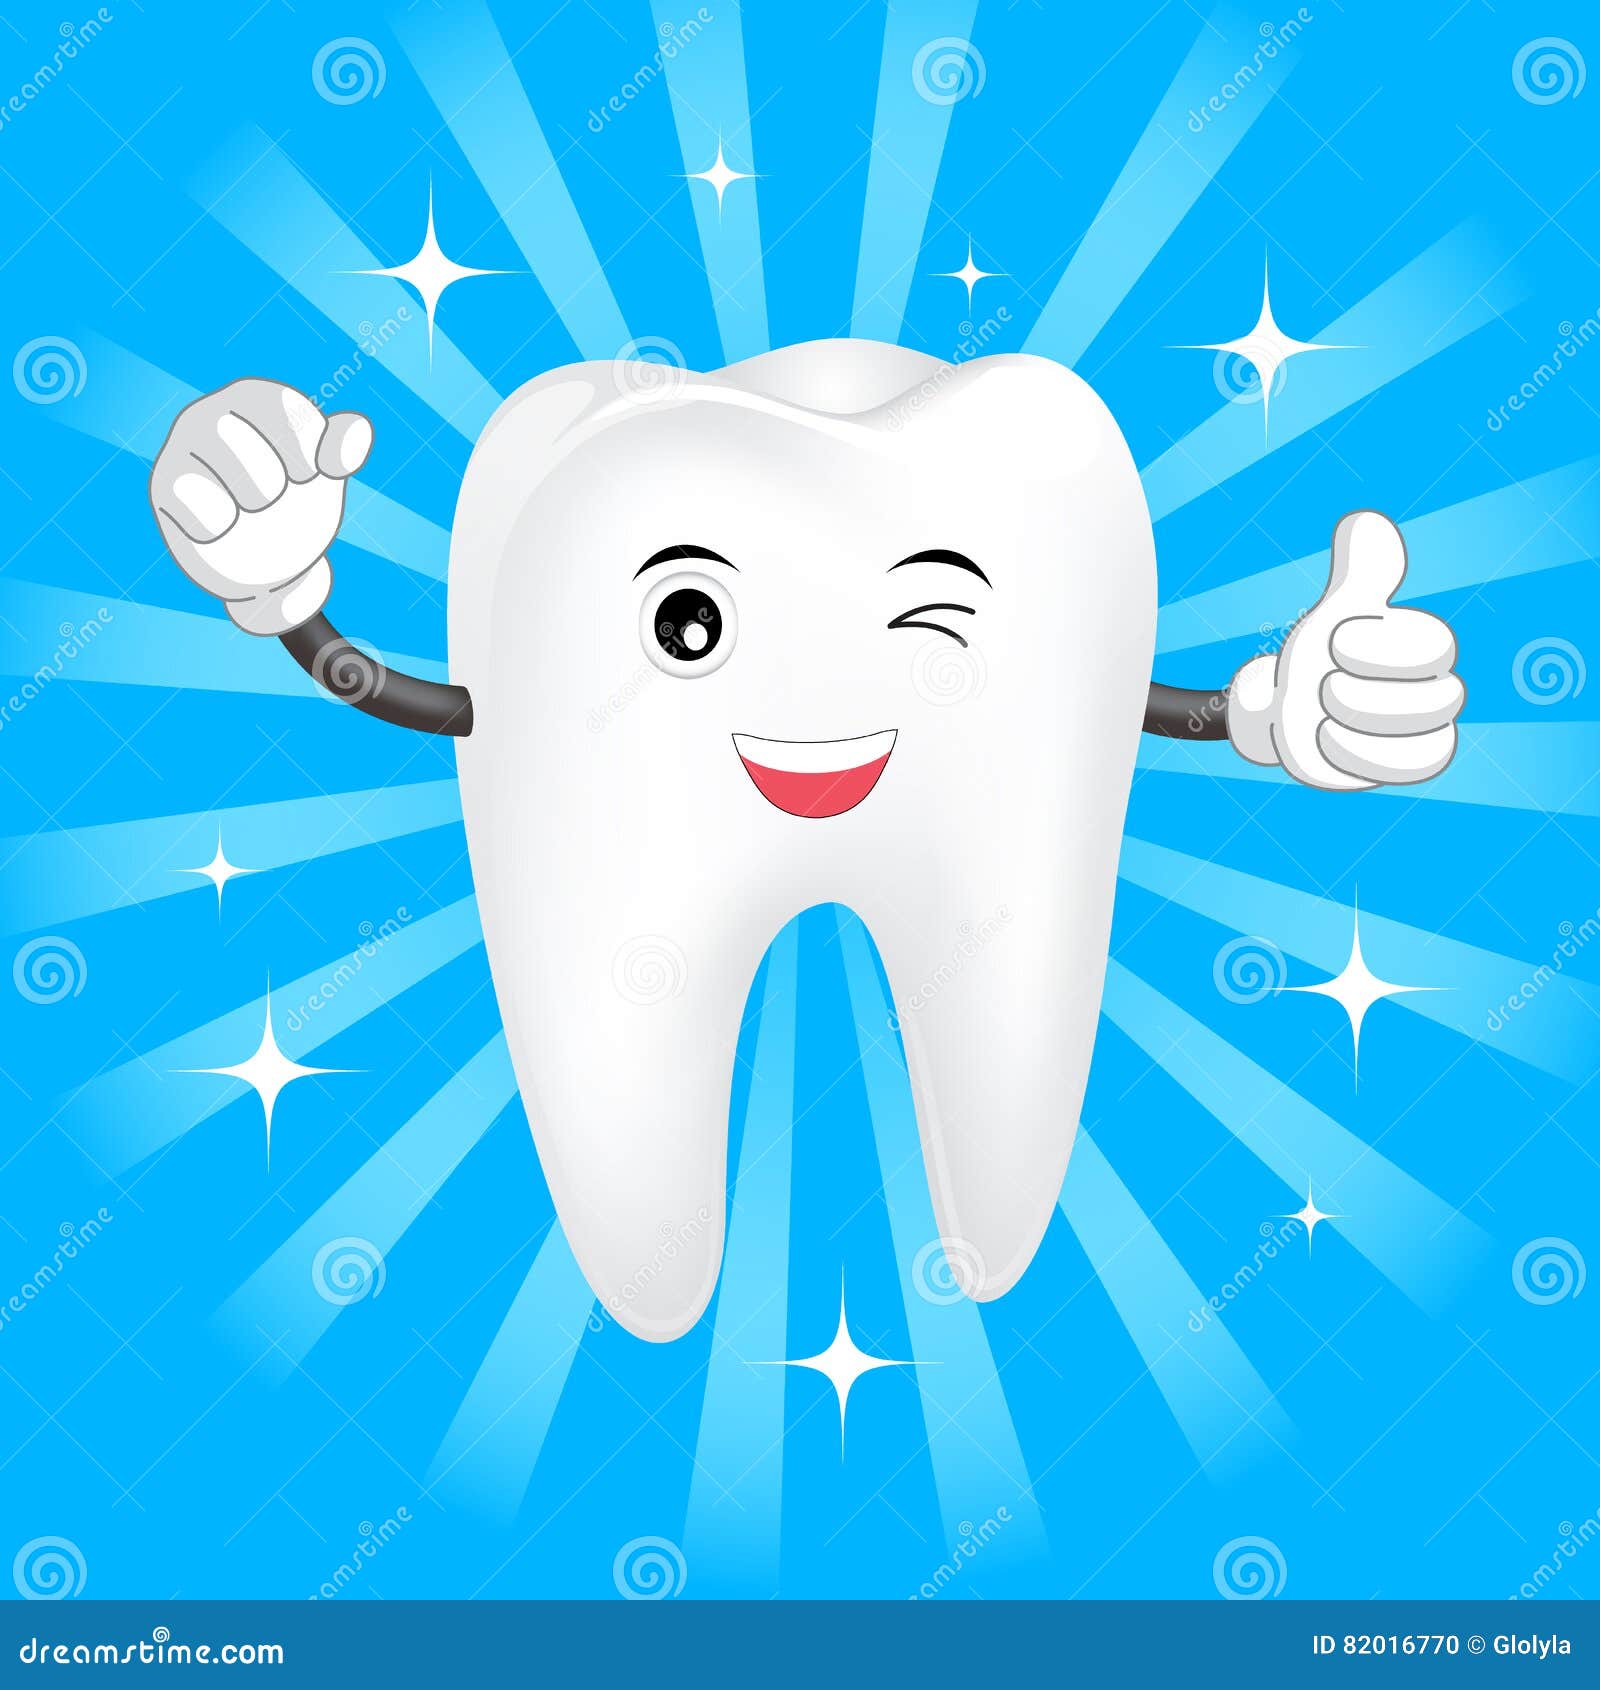 Рисунок на тему здоровые зубки счастливые улыбки: Презентация ко дню здоровья "Здоровые зубки"